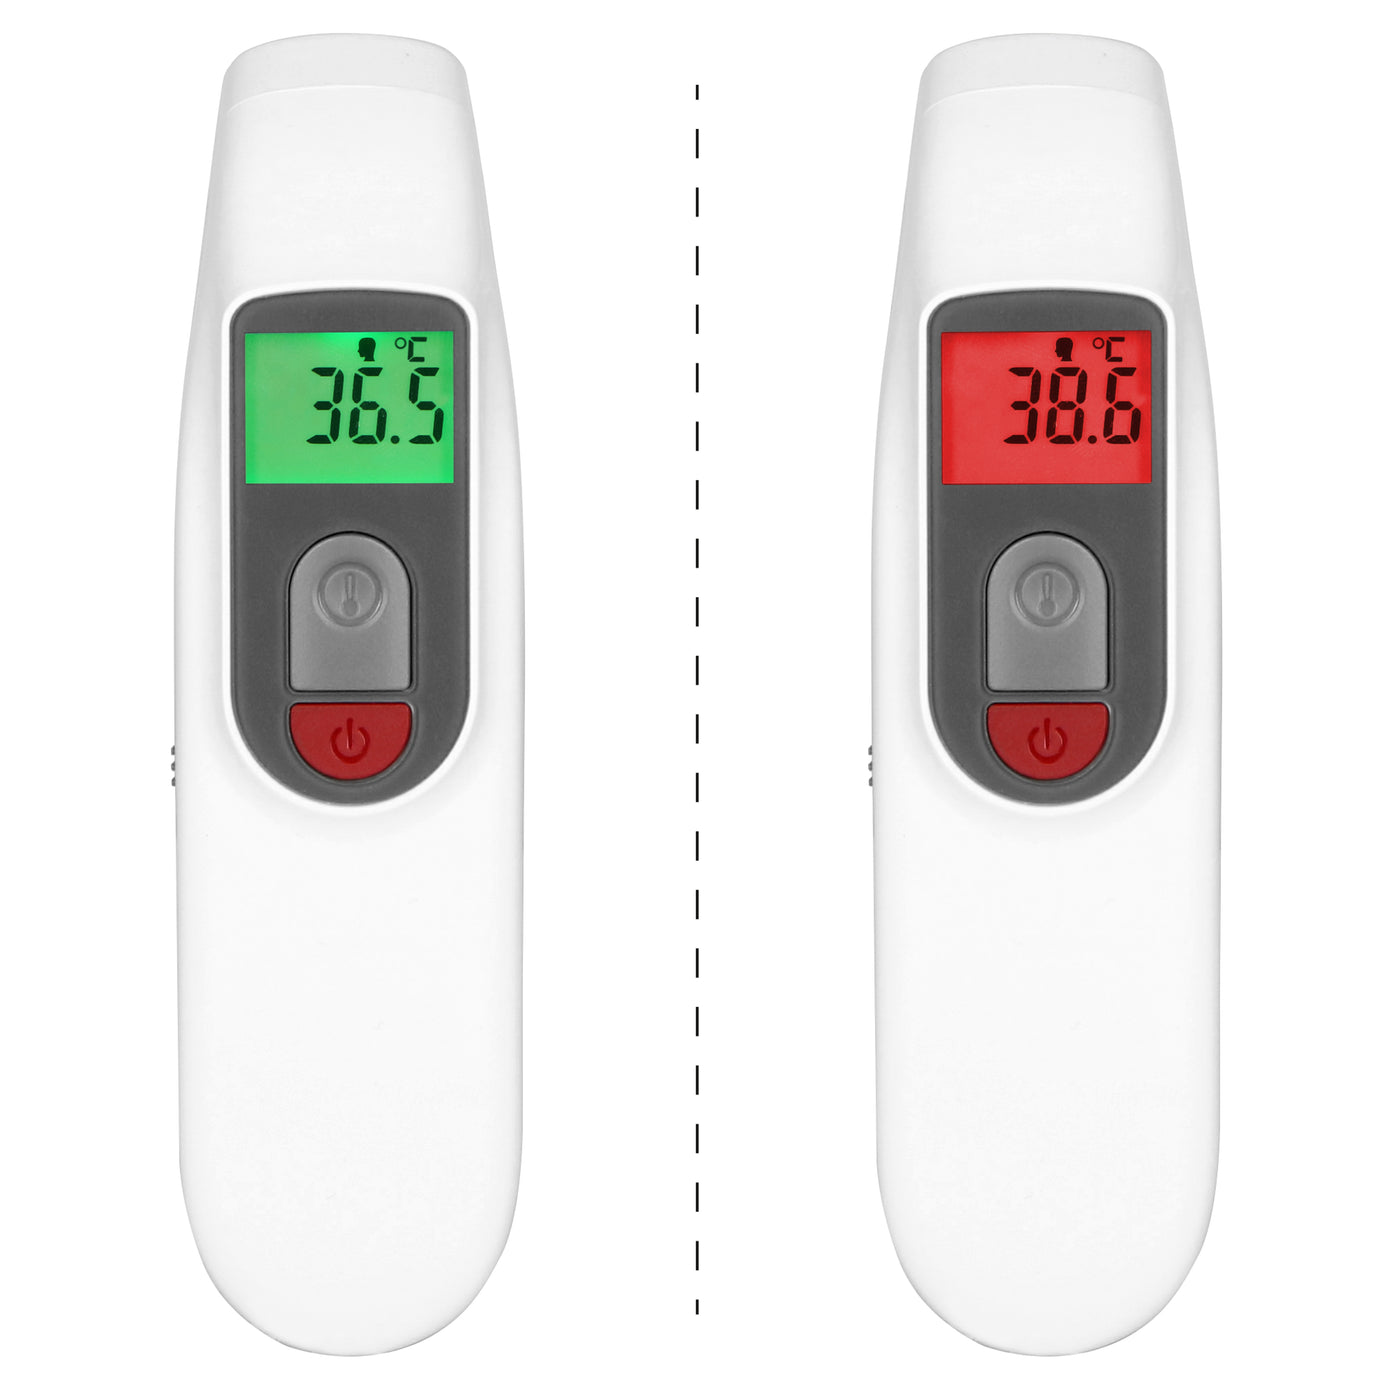 Fysic FT38 - Voorhoofdthermometer, infrarood, wit